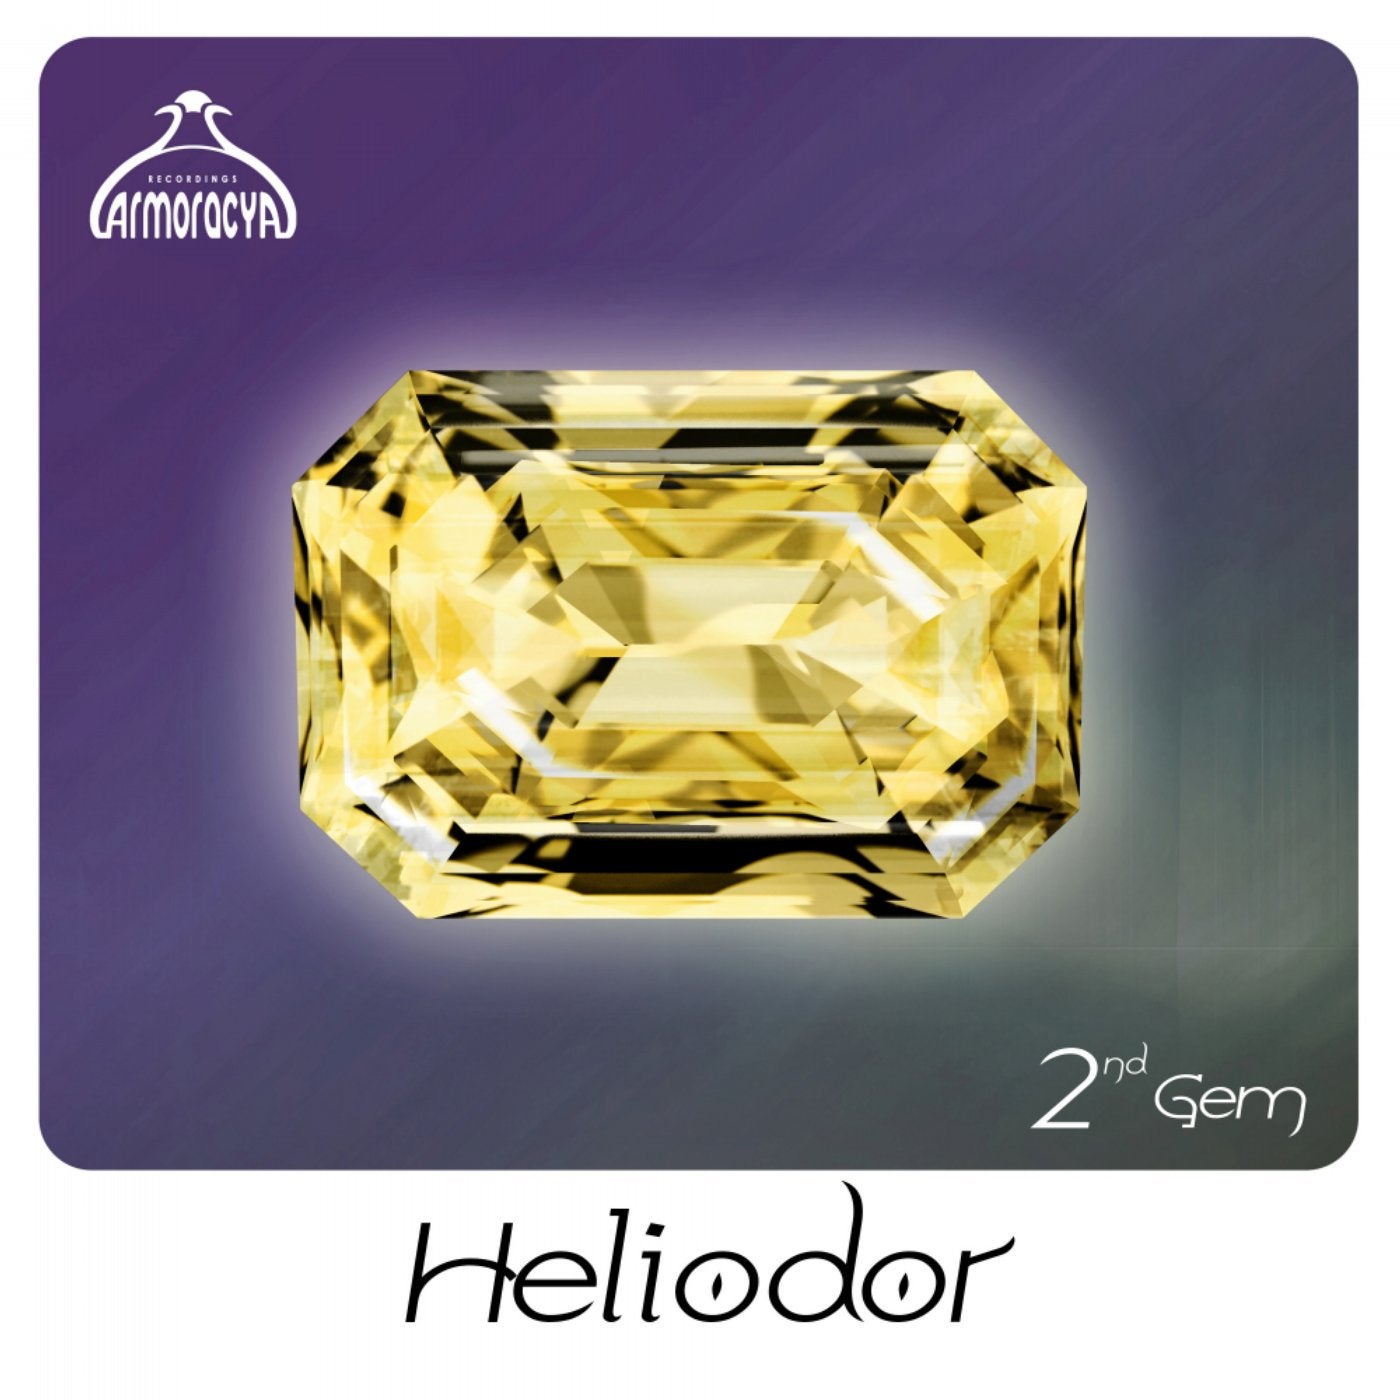 Heliodor 2nd Gem (Radio Edits)